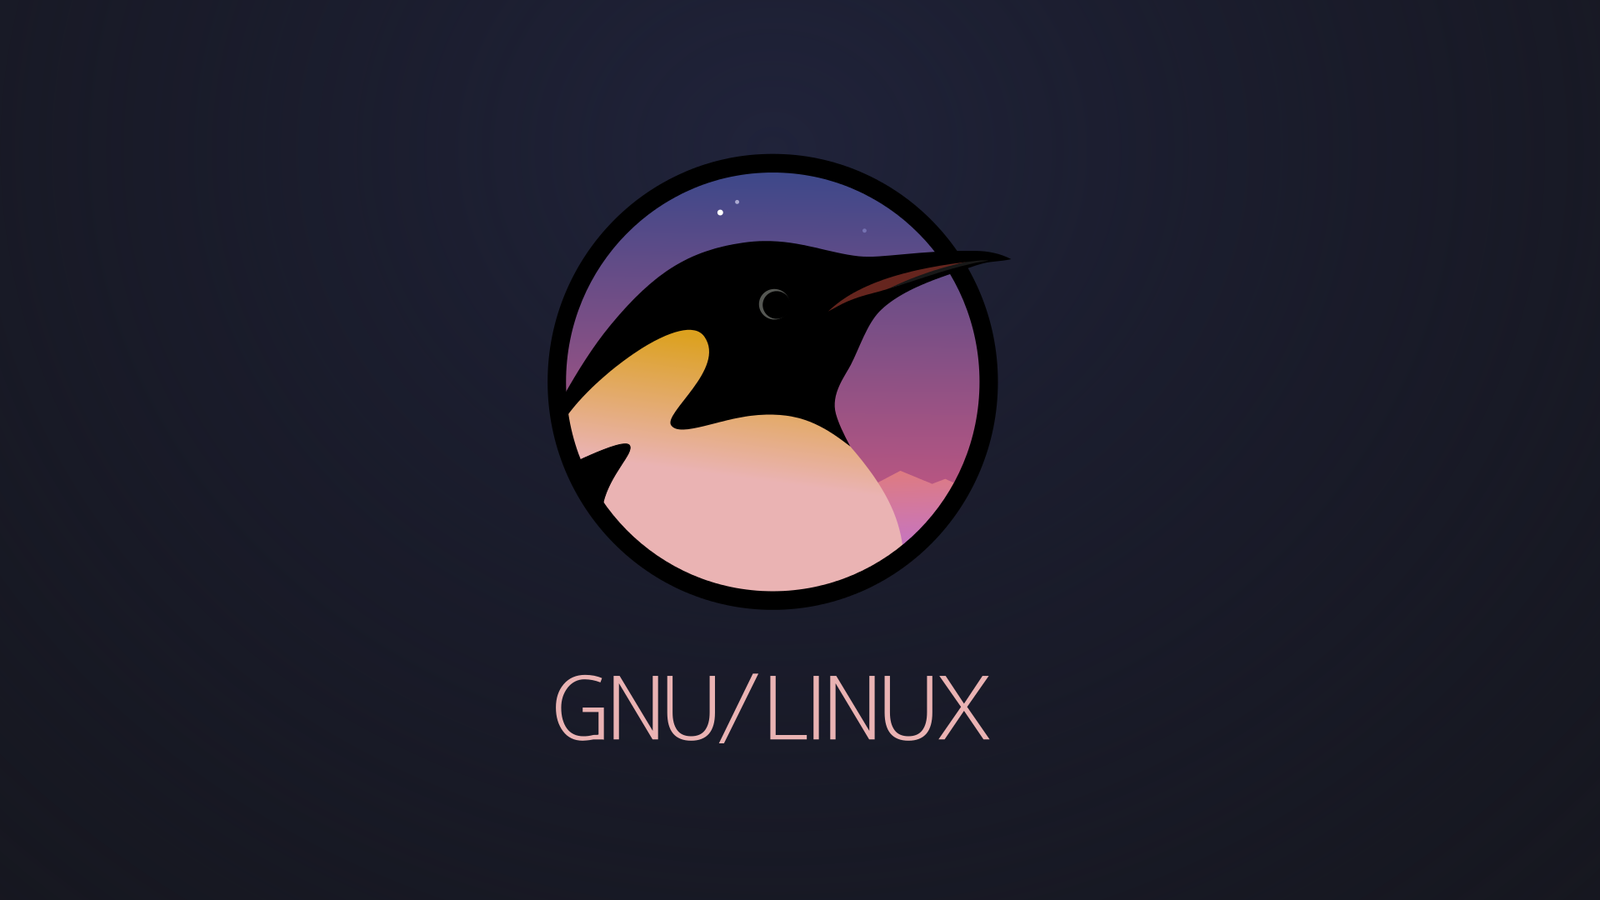 GNU/Linux logo - My, Logo, Linux, Penguins, Inkscape, Svg